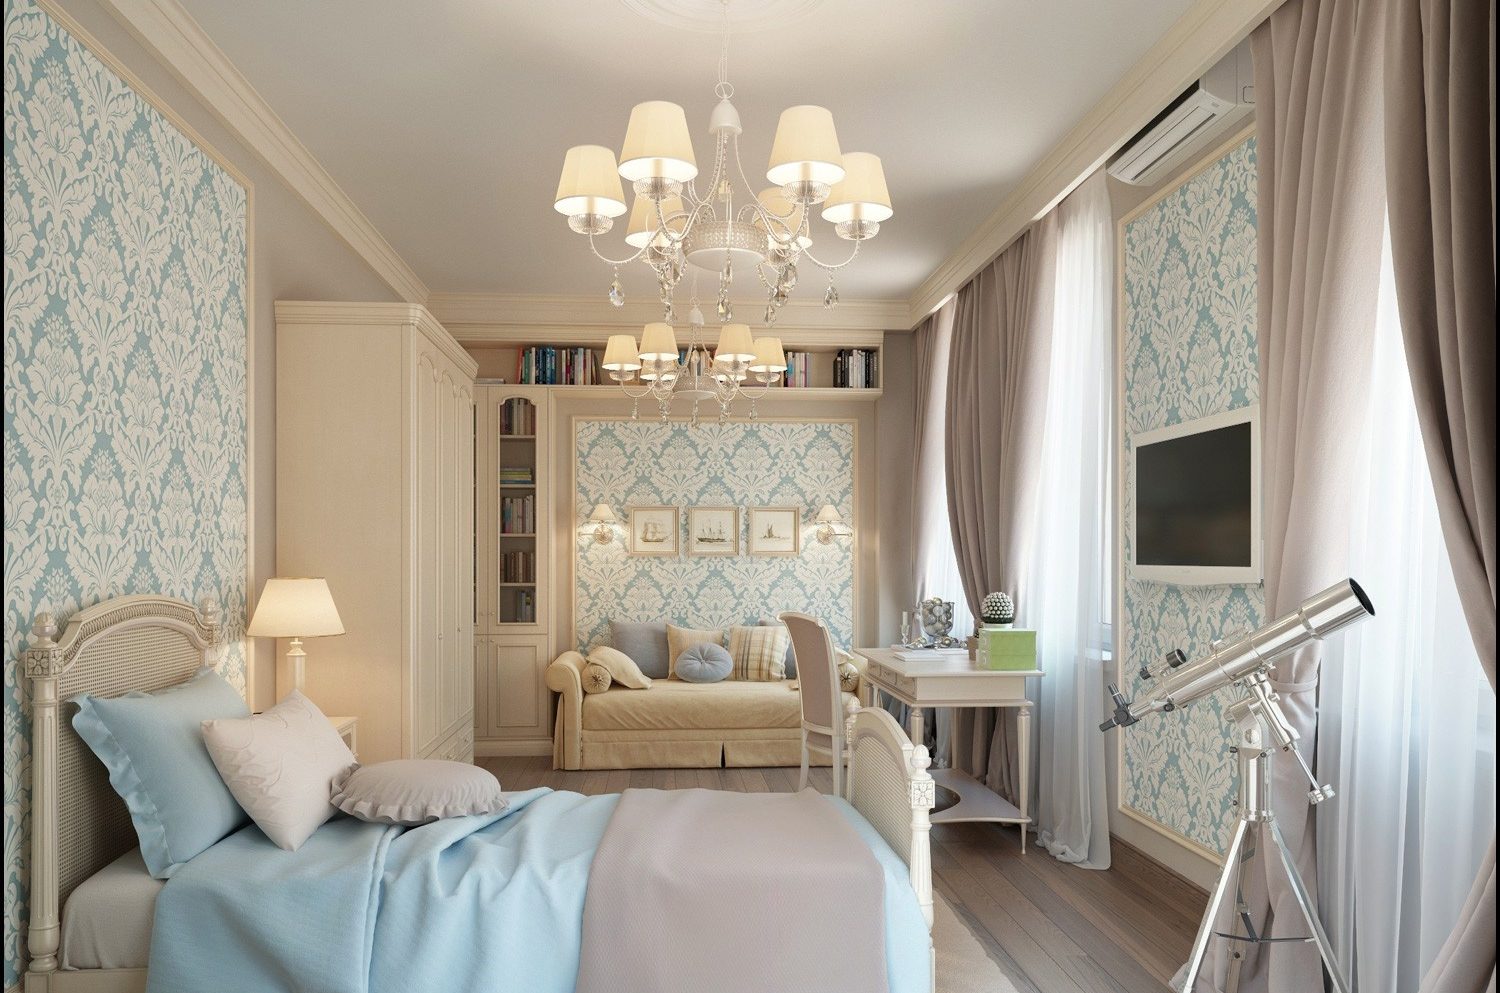 спальня в классическом стиле фото дизайн